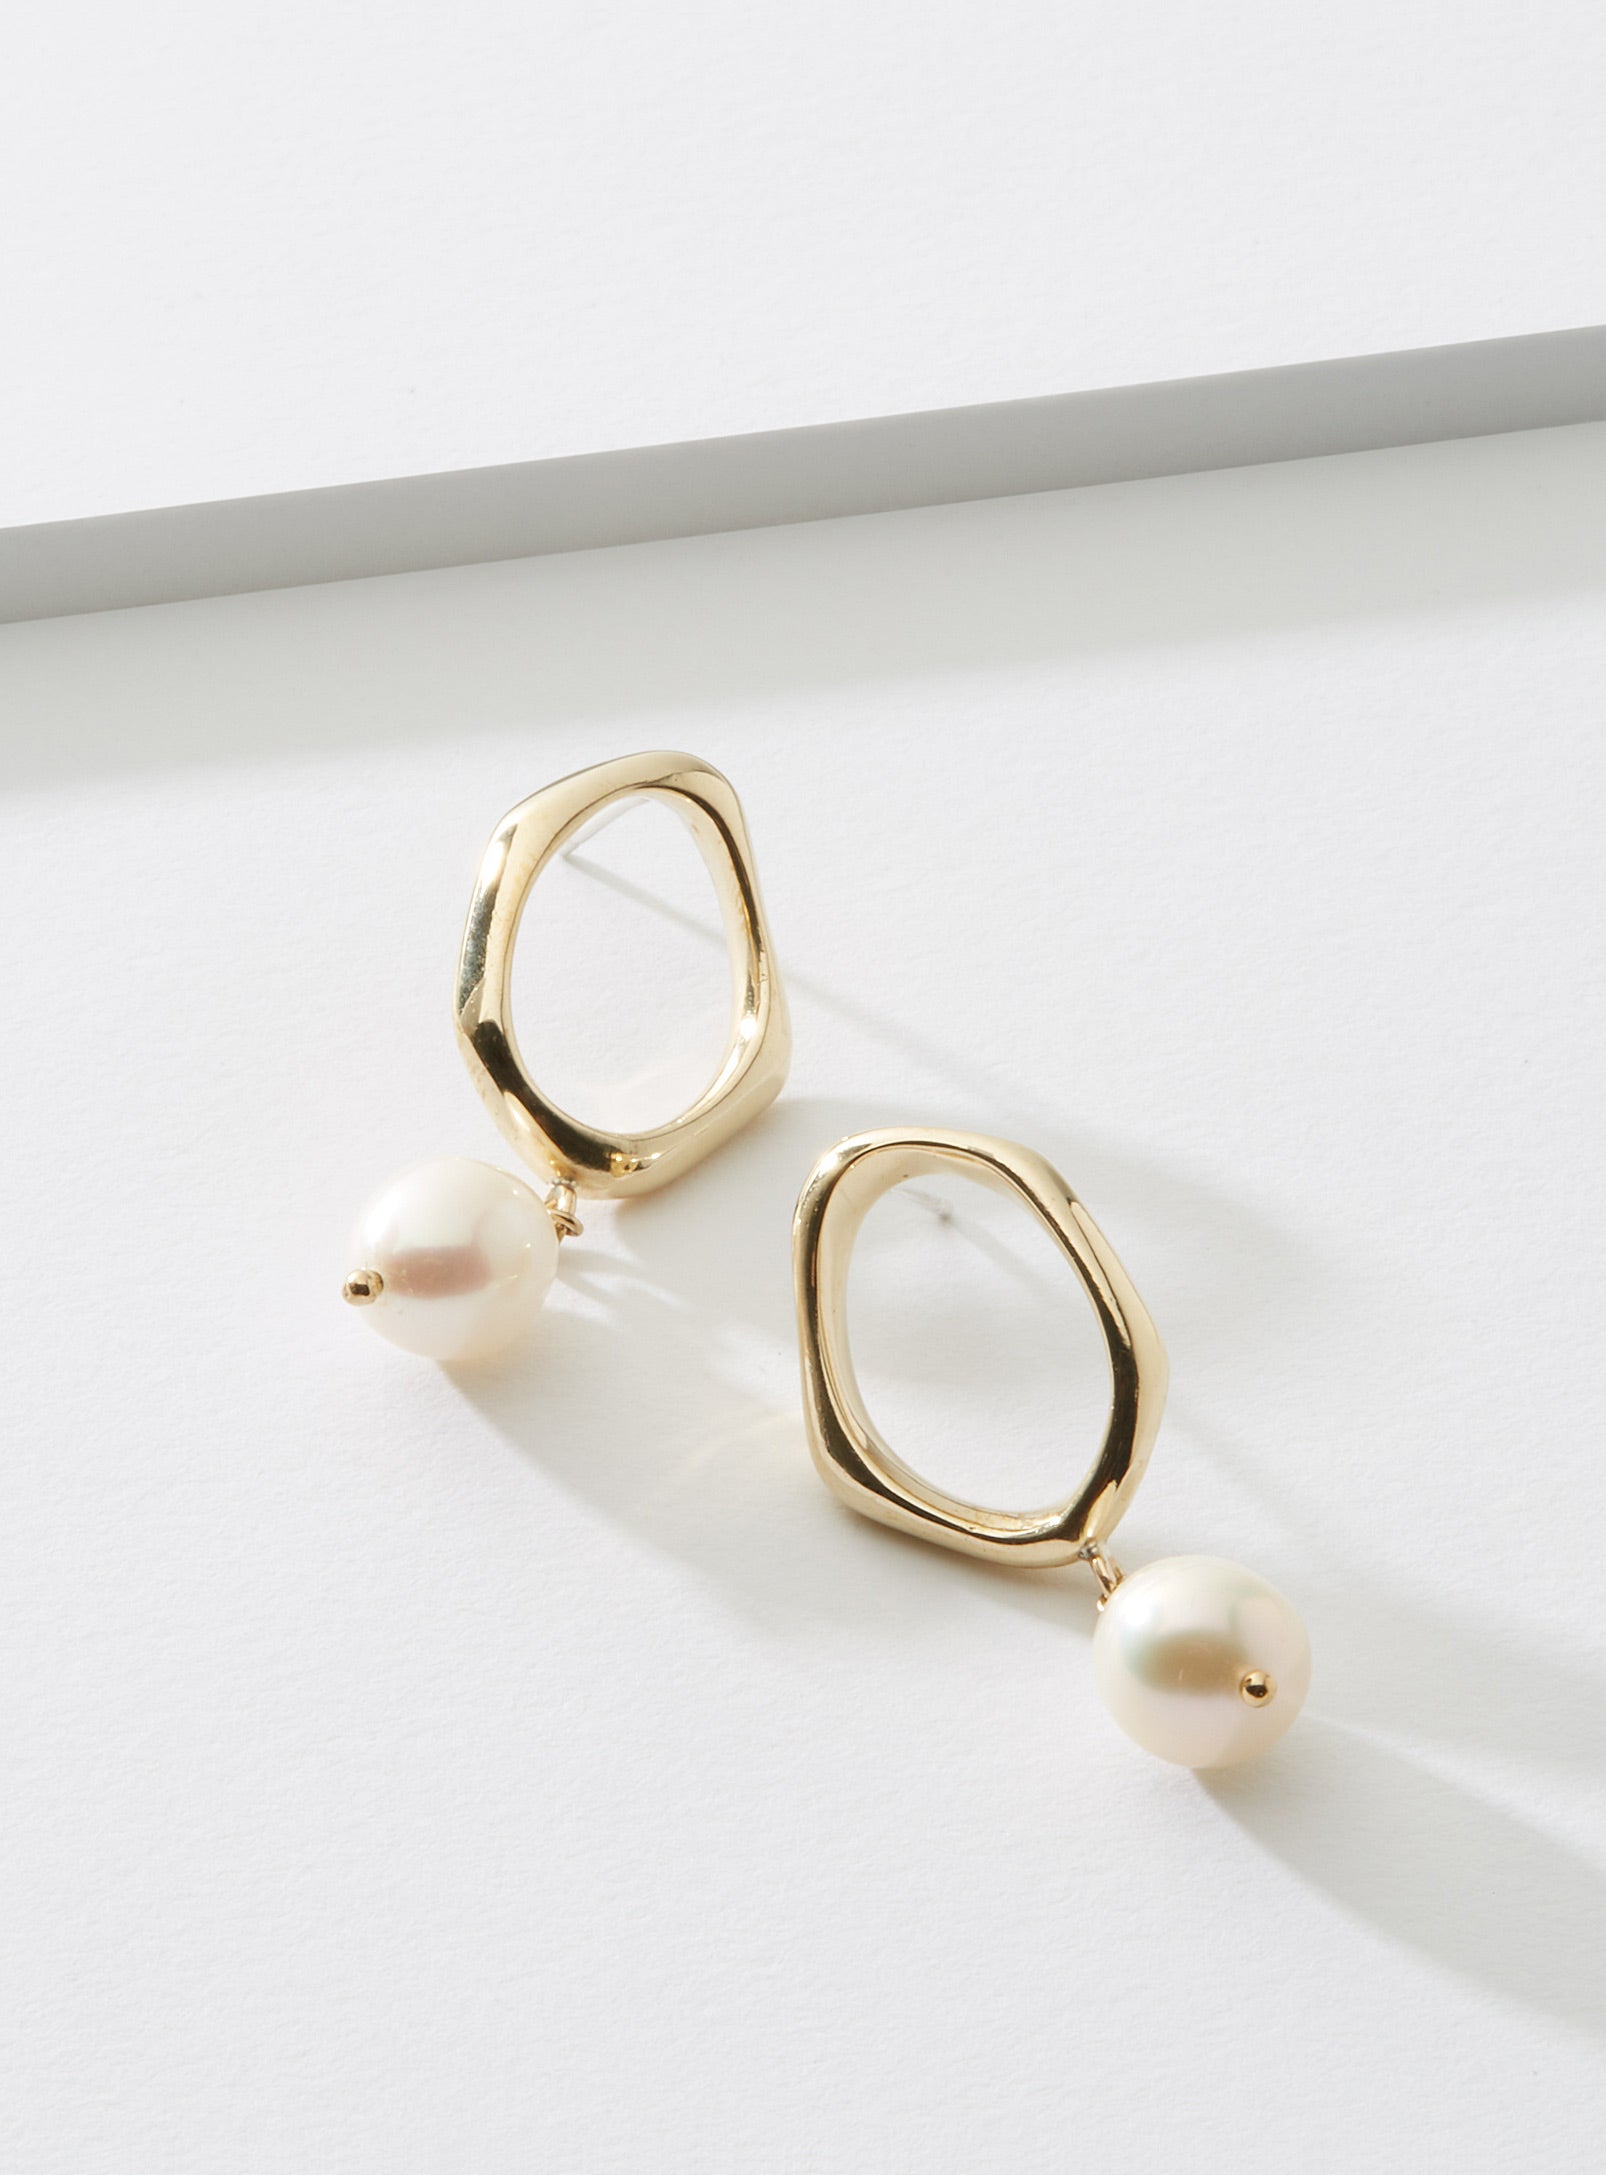 Hera earrings – Cadette Jewelry